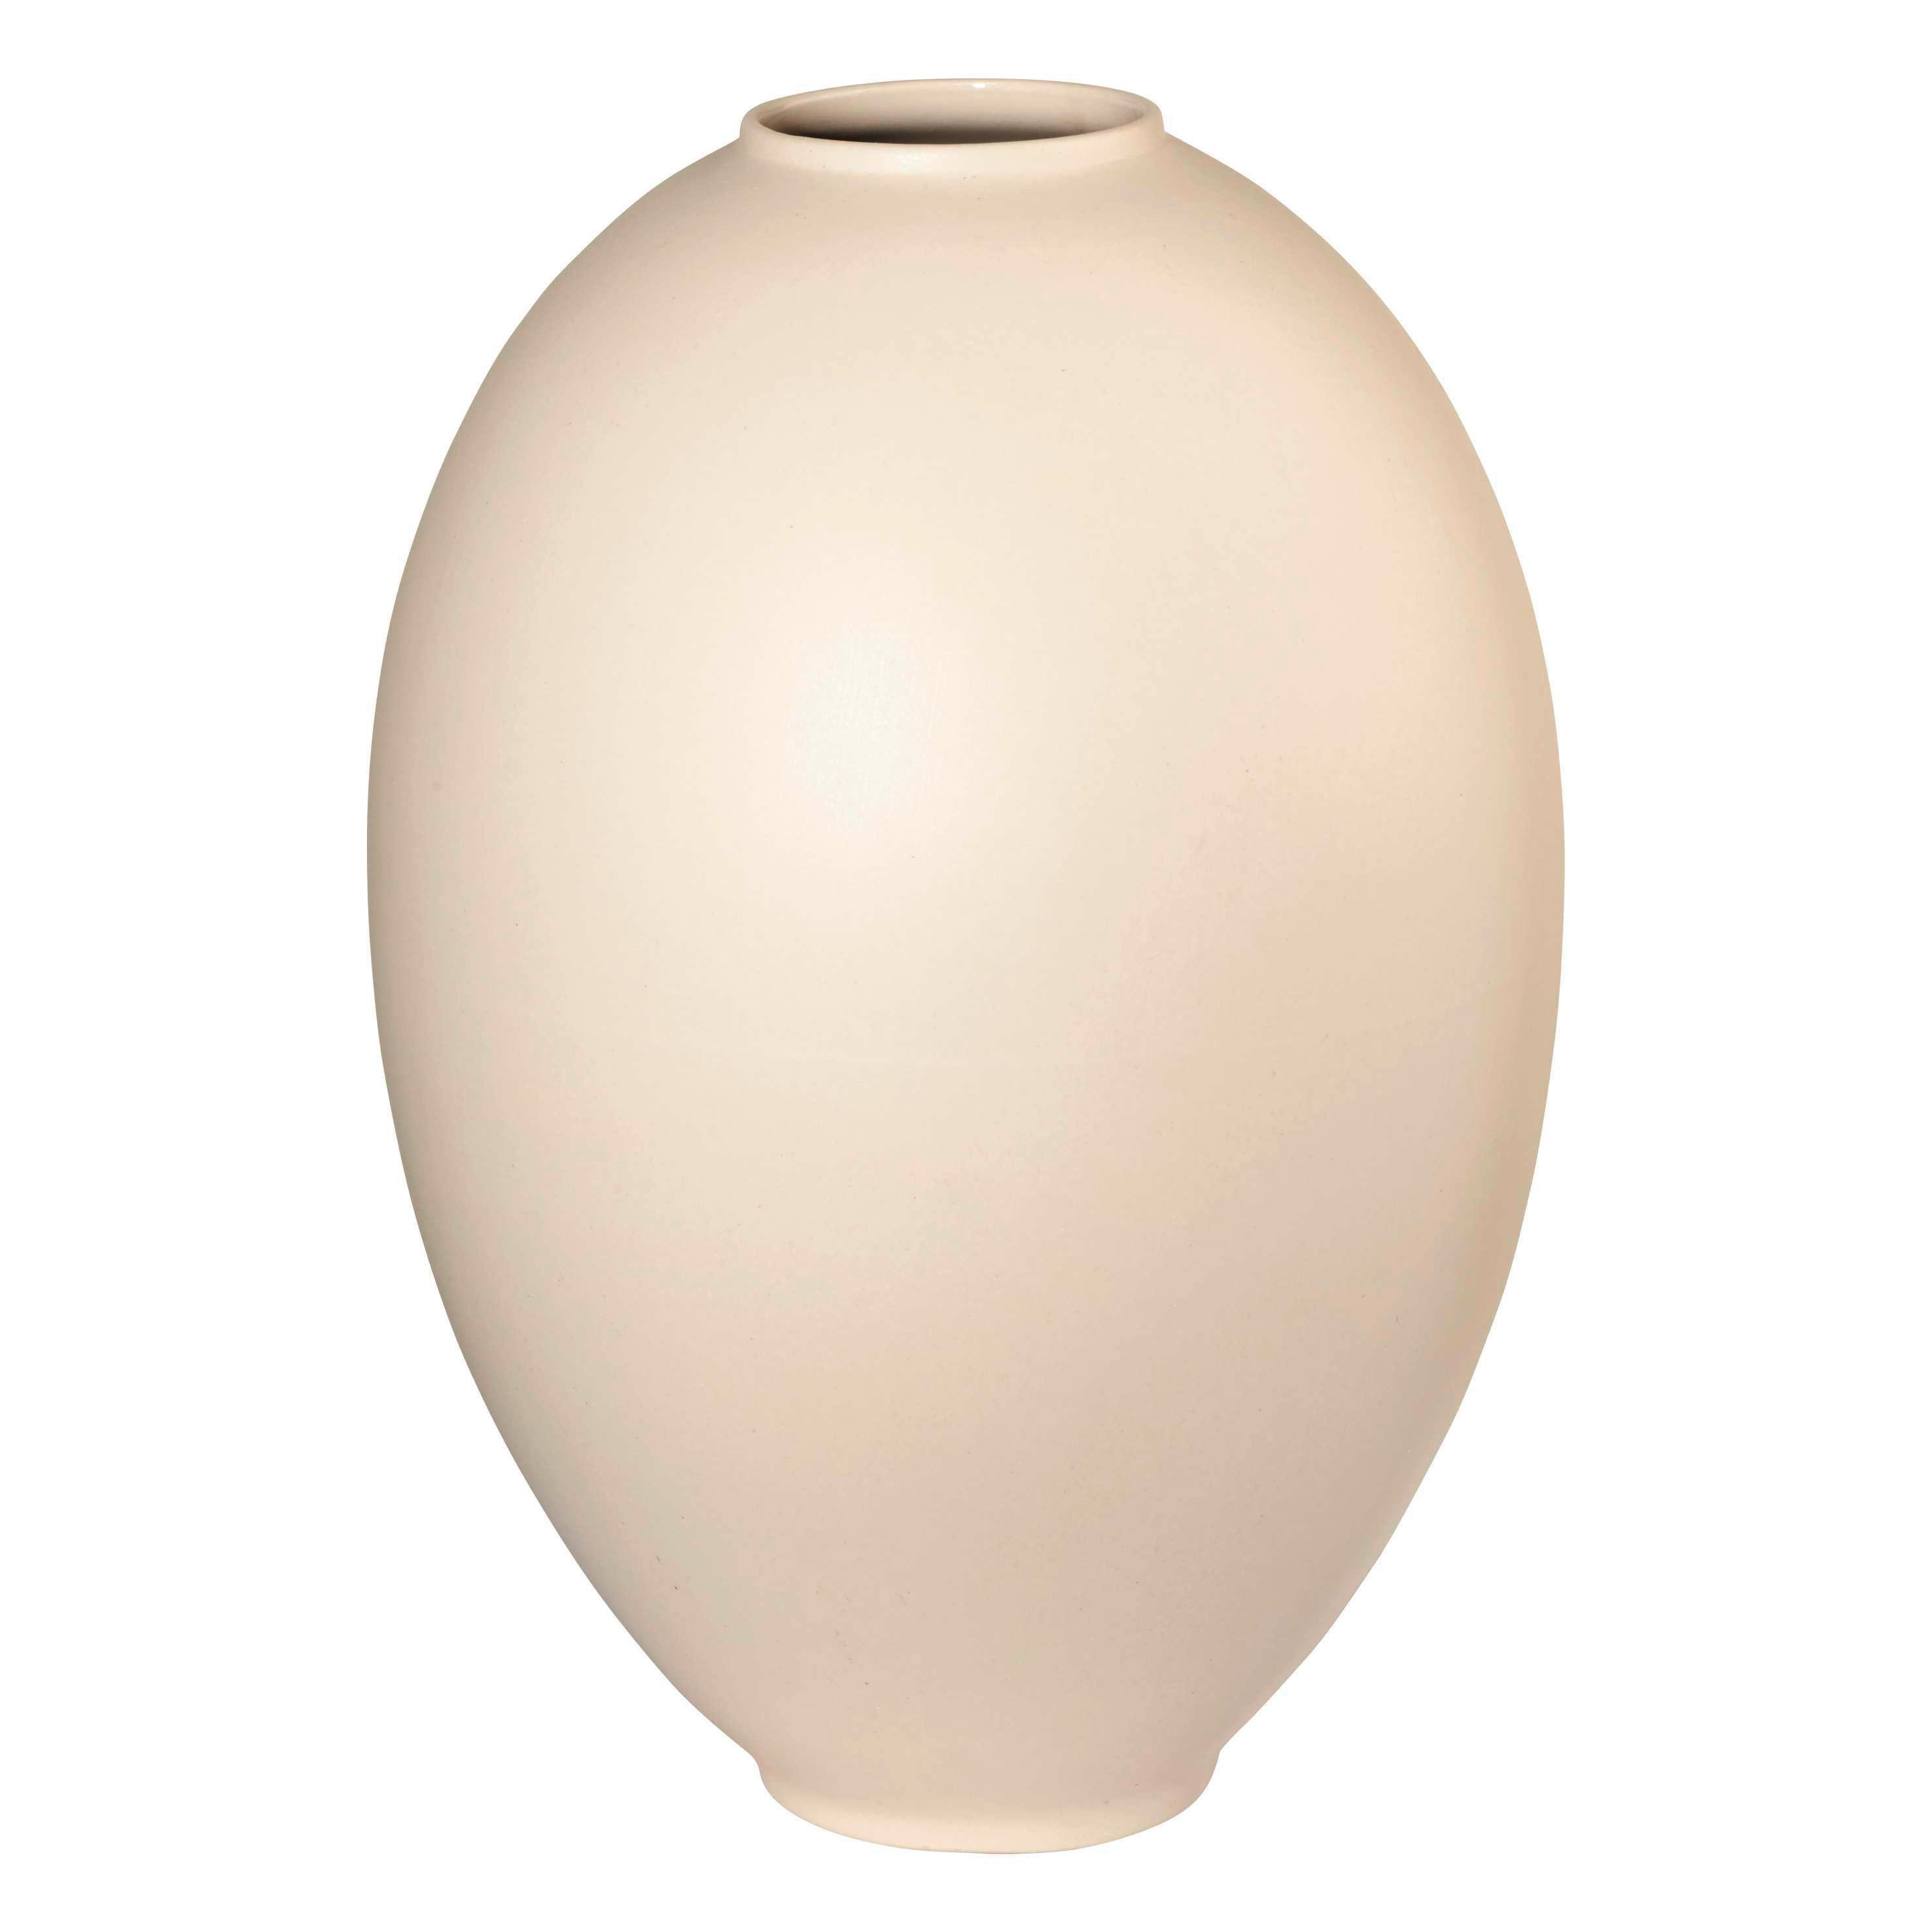 VÁZA, keramika, 25 cm - prírodné farby/krémová, Basics, keramika (17/17/25cm) - ASA